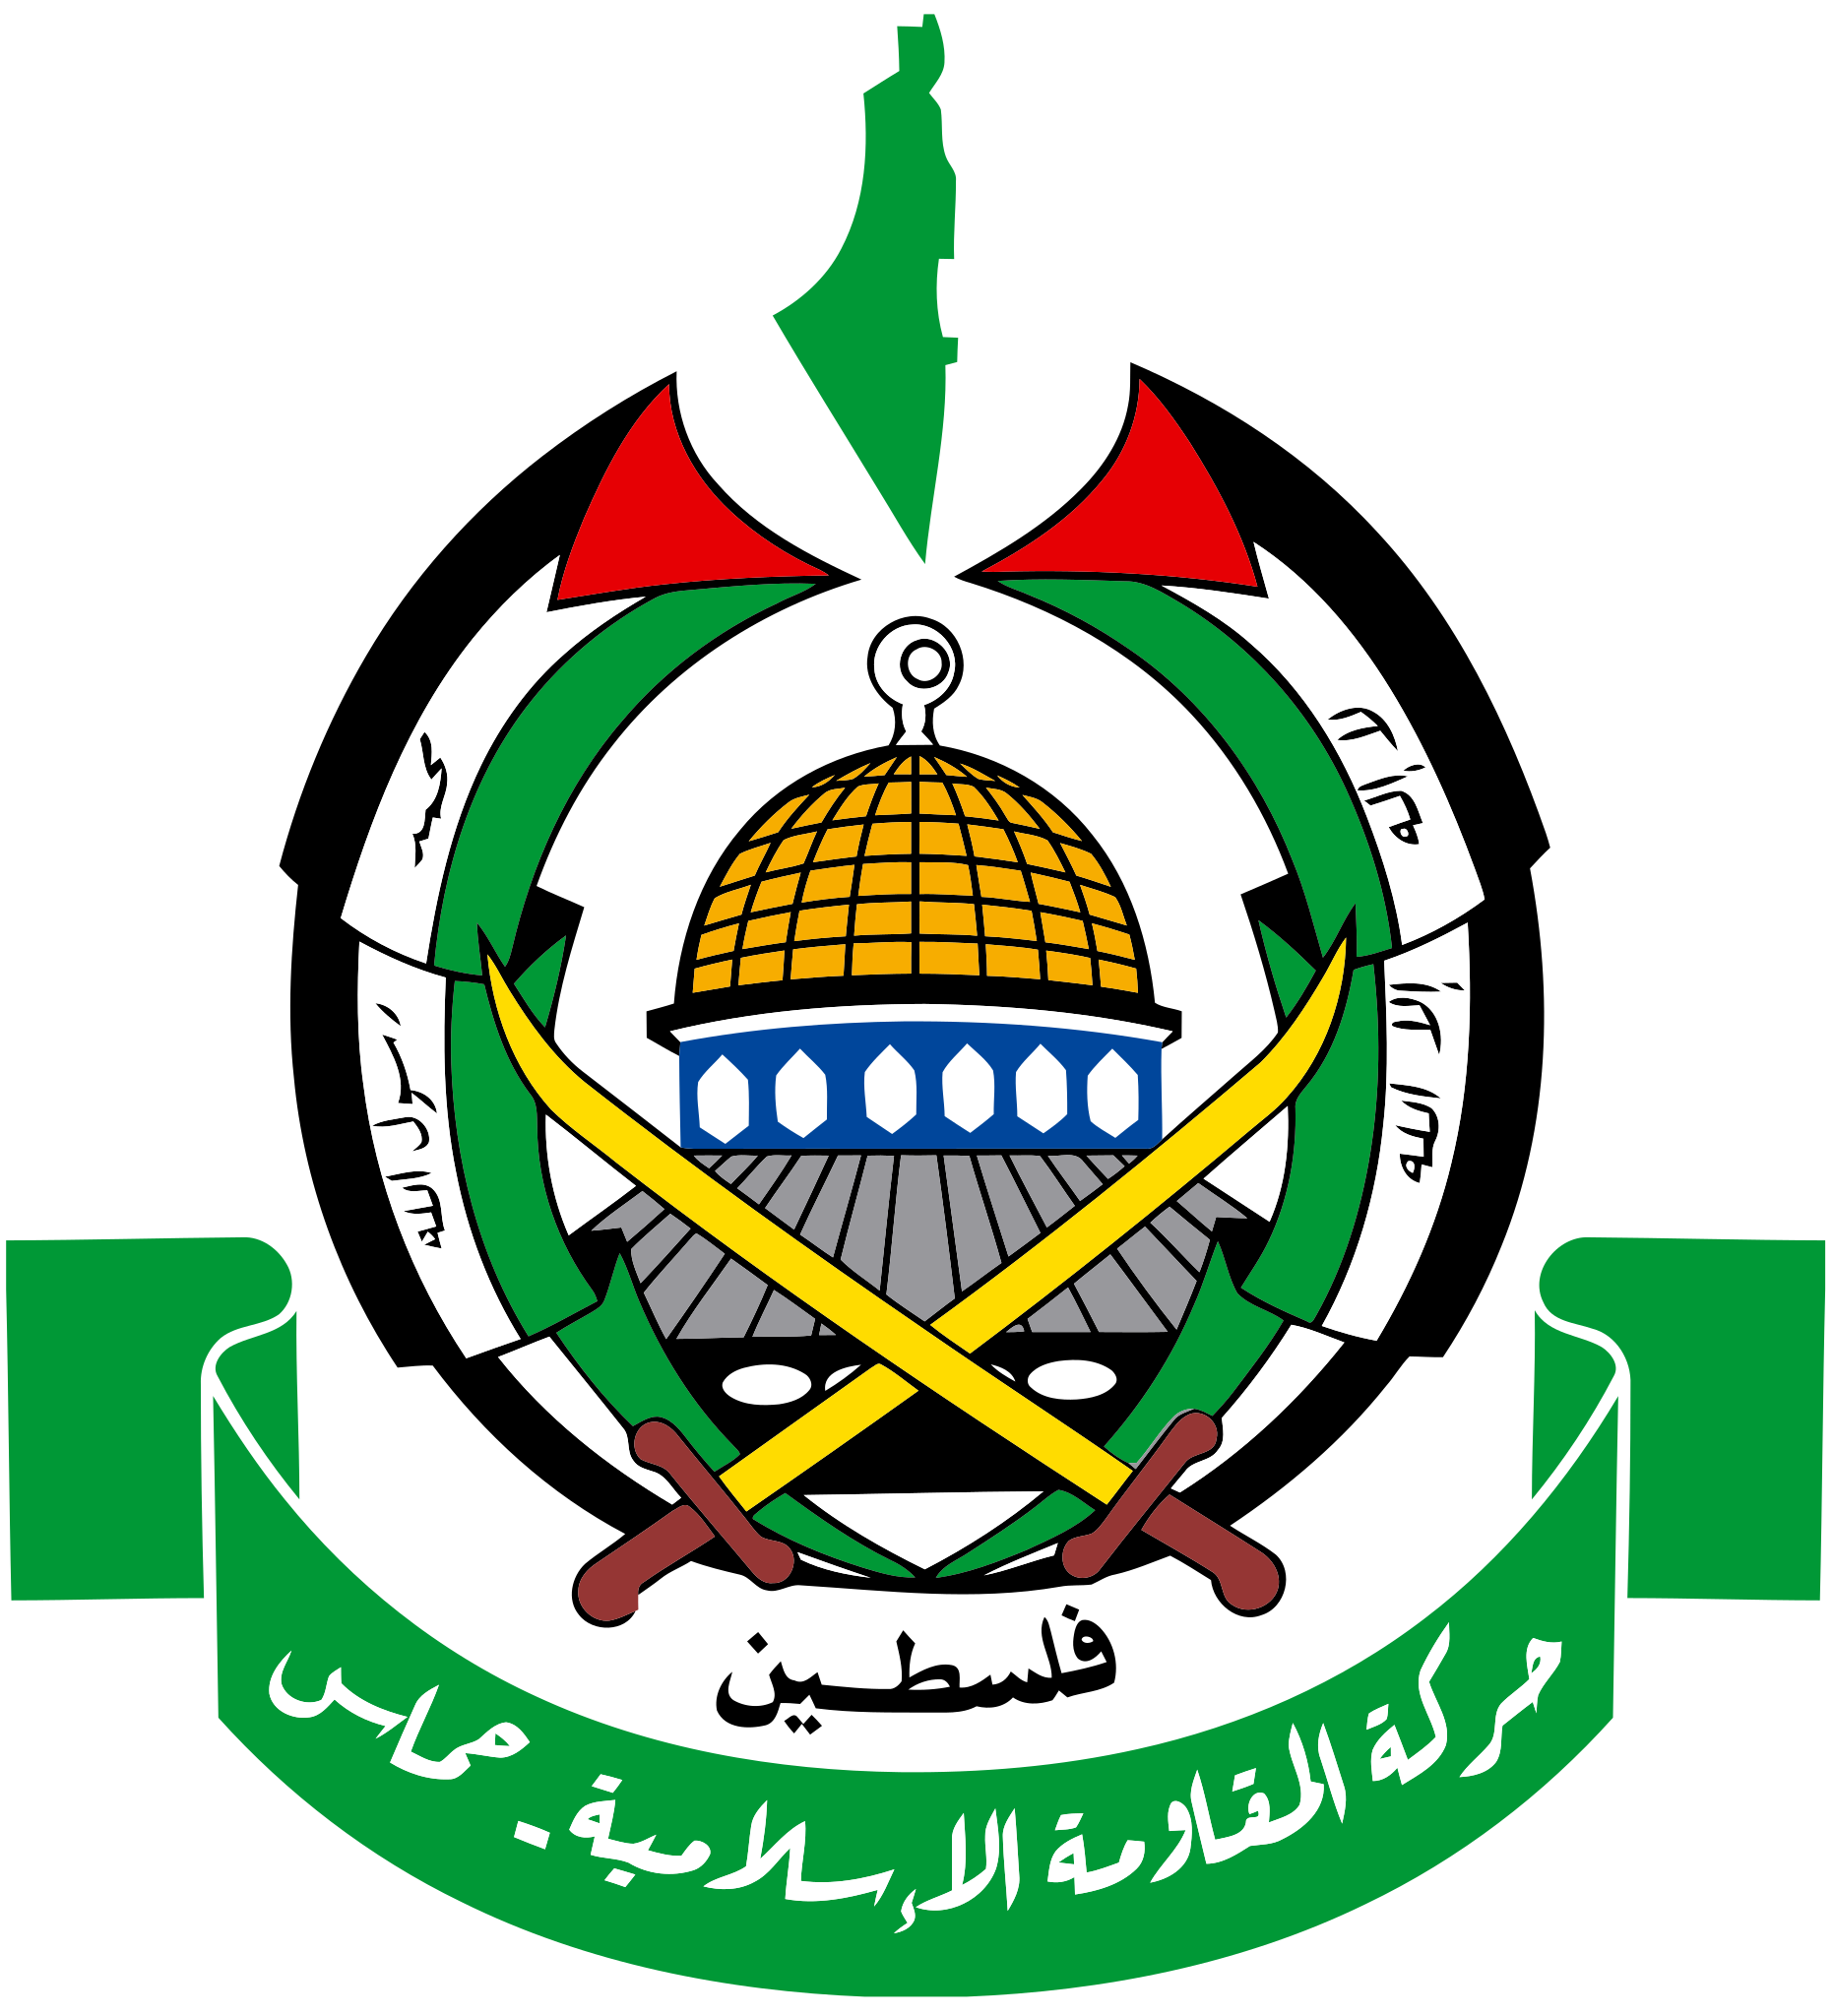 File:Hamas logo.png